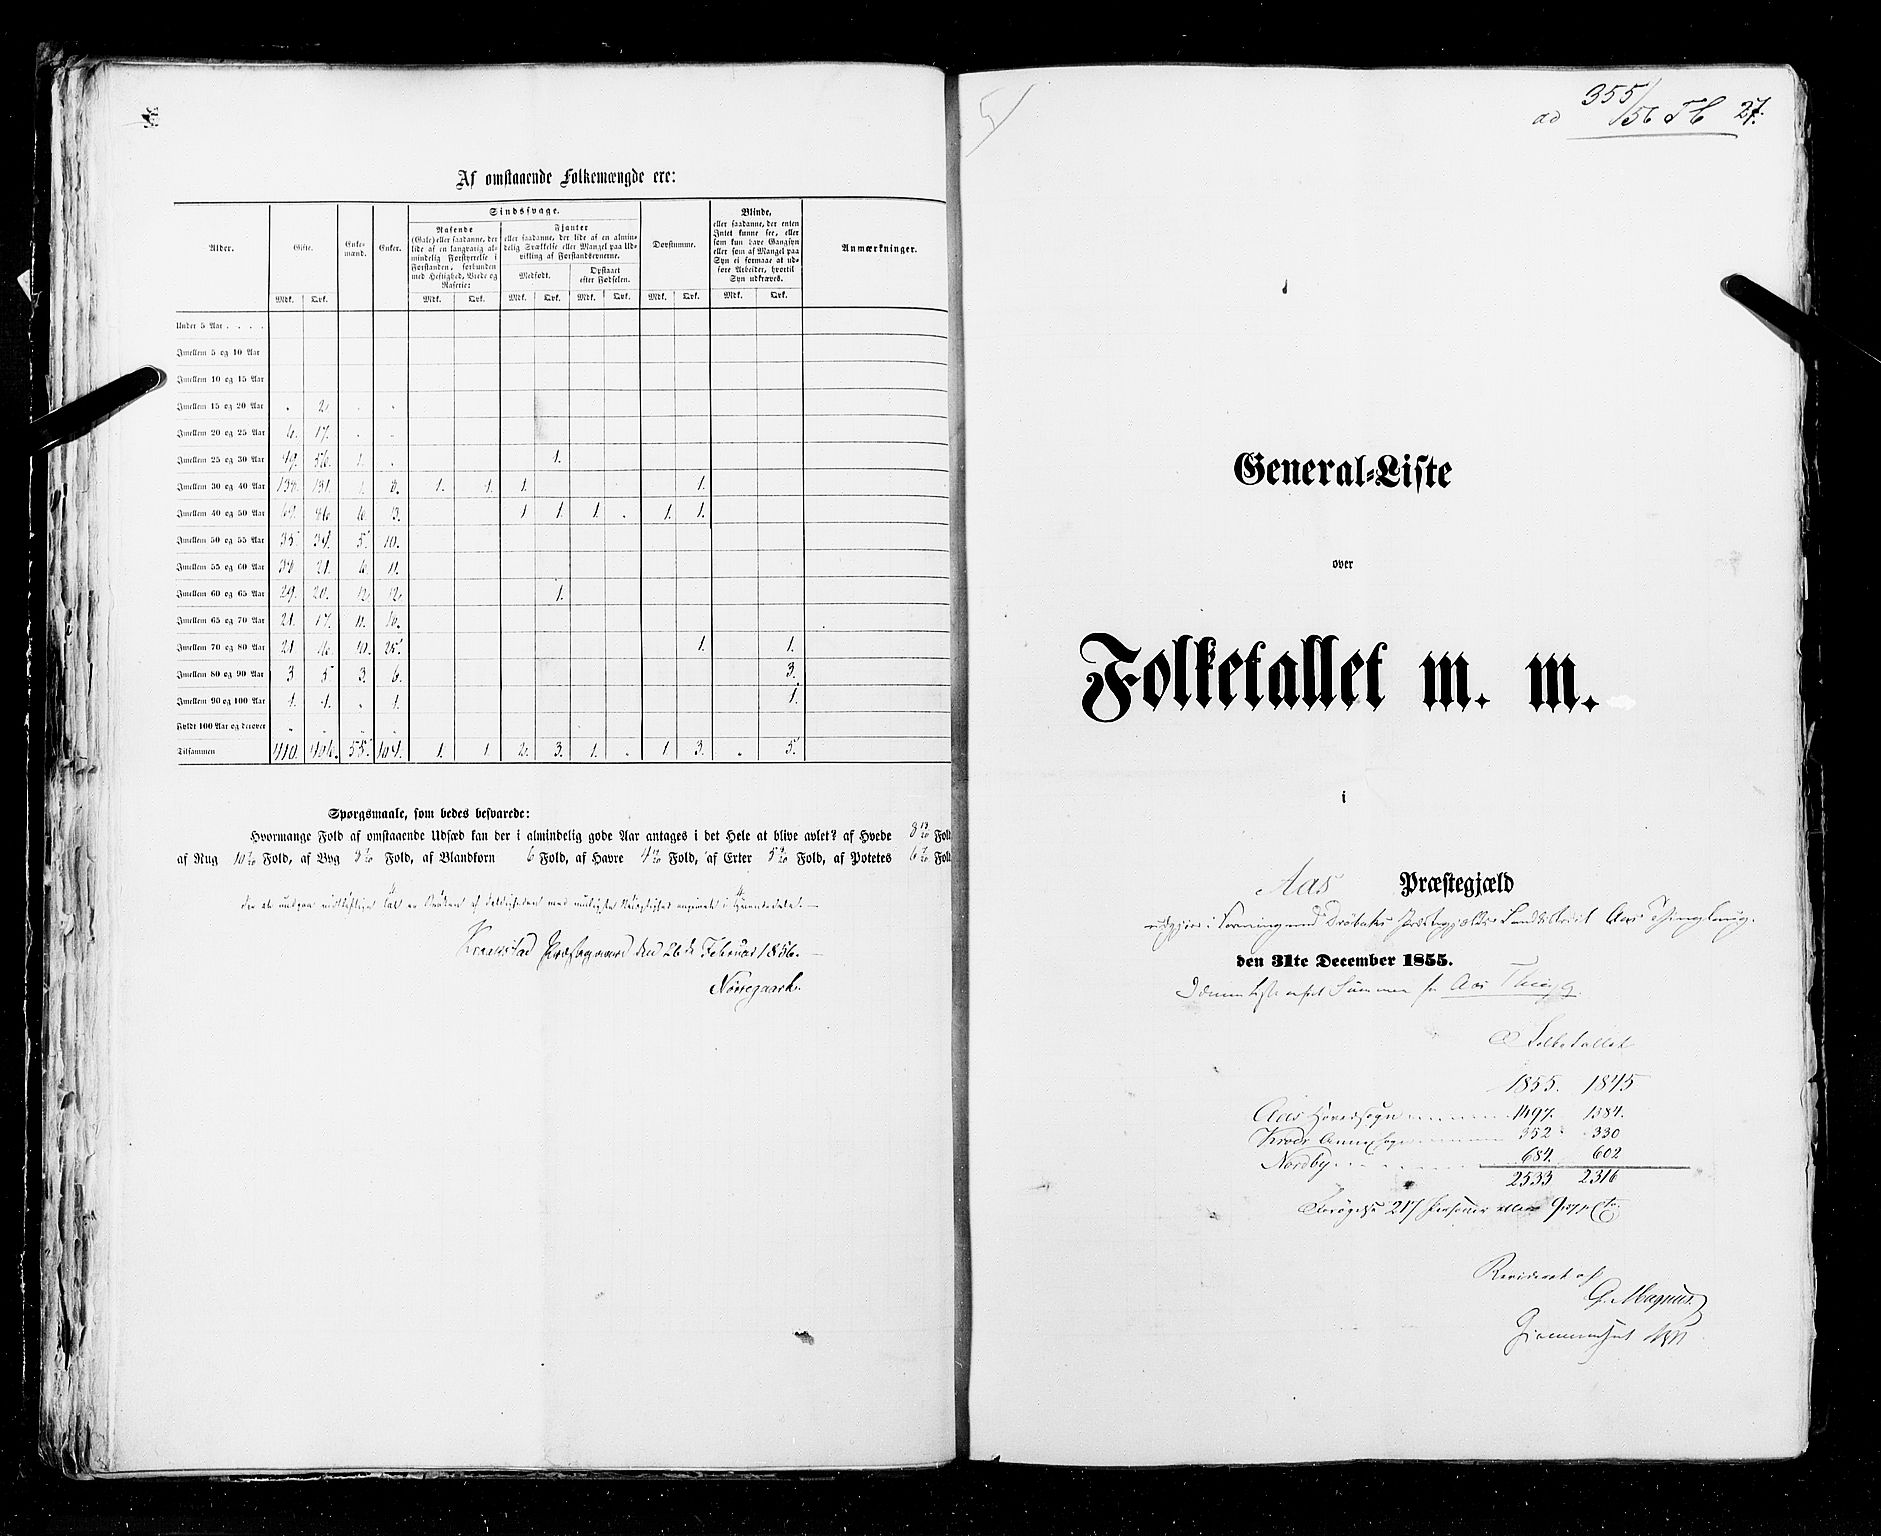 RA, Folketellingen 1855, bind 1: Akershus amt, Smålenenes amt og Hedemarken amt, 1855, s. 27